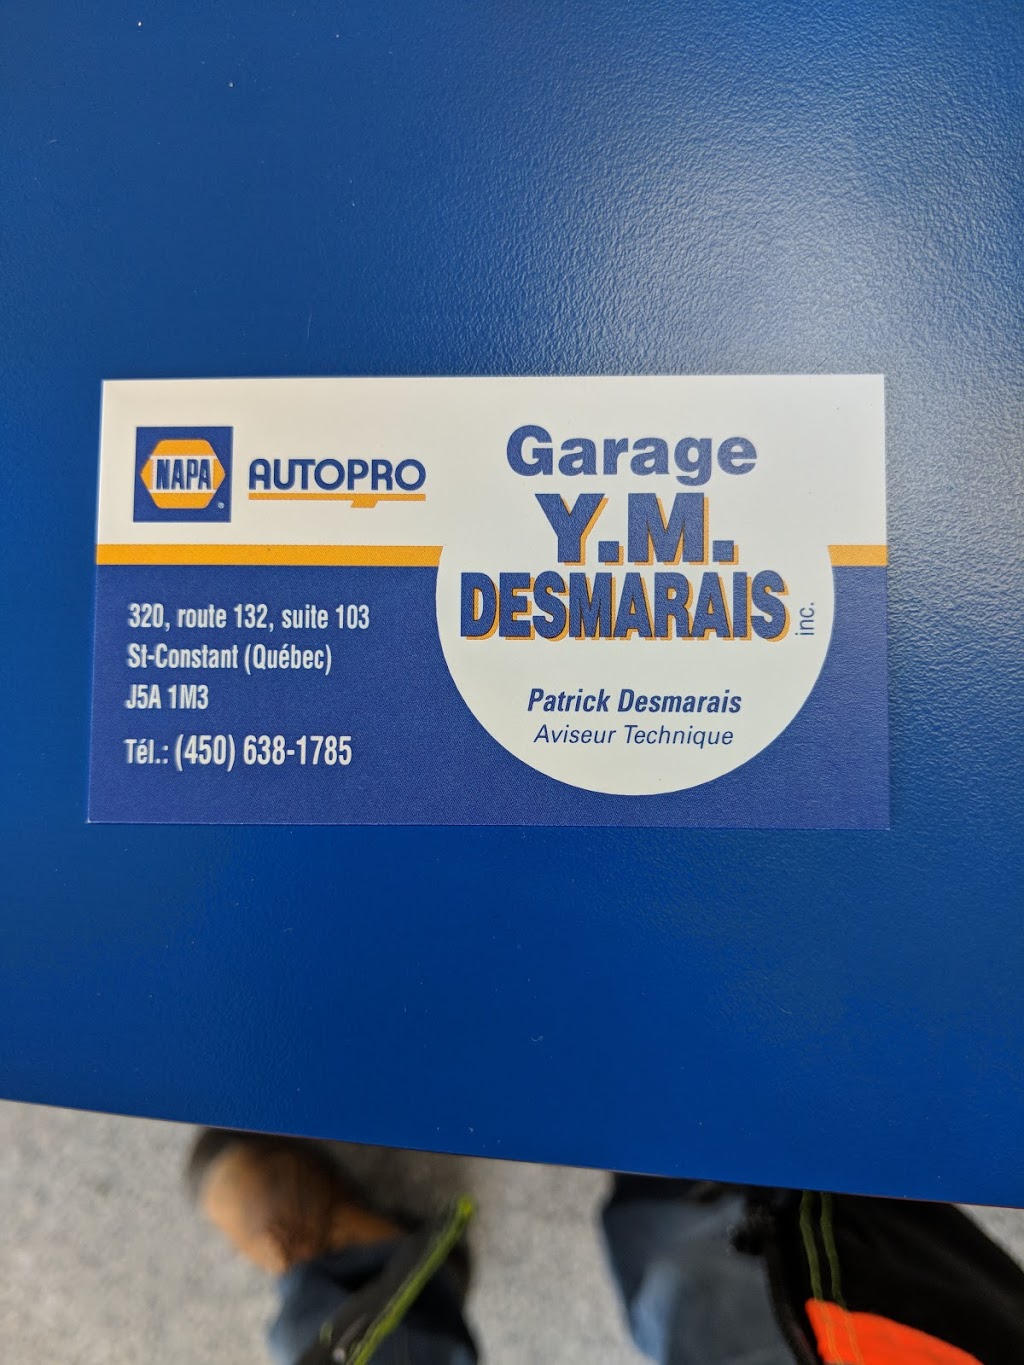 NAPA AUTOPRO - Garage Y.M. Desmarais Inc | car repair | 320 route 132, suite 103, Saint-Constant, QC J5A 1M3, Canada | 4506381785 OR +1 450-638-1785